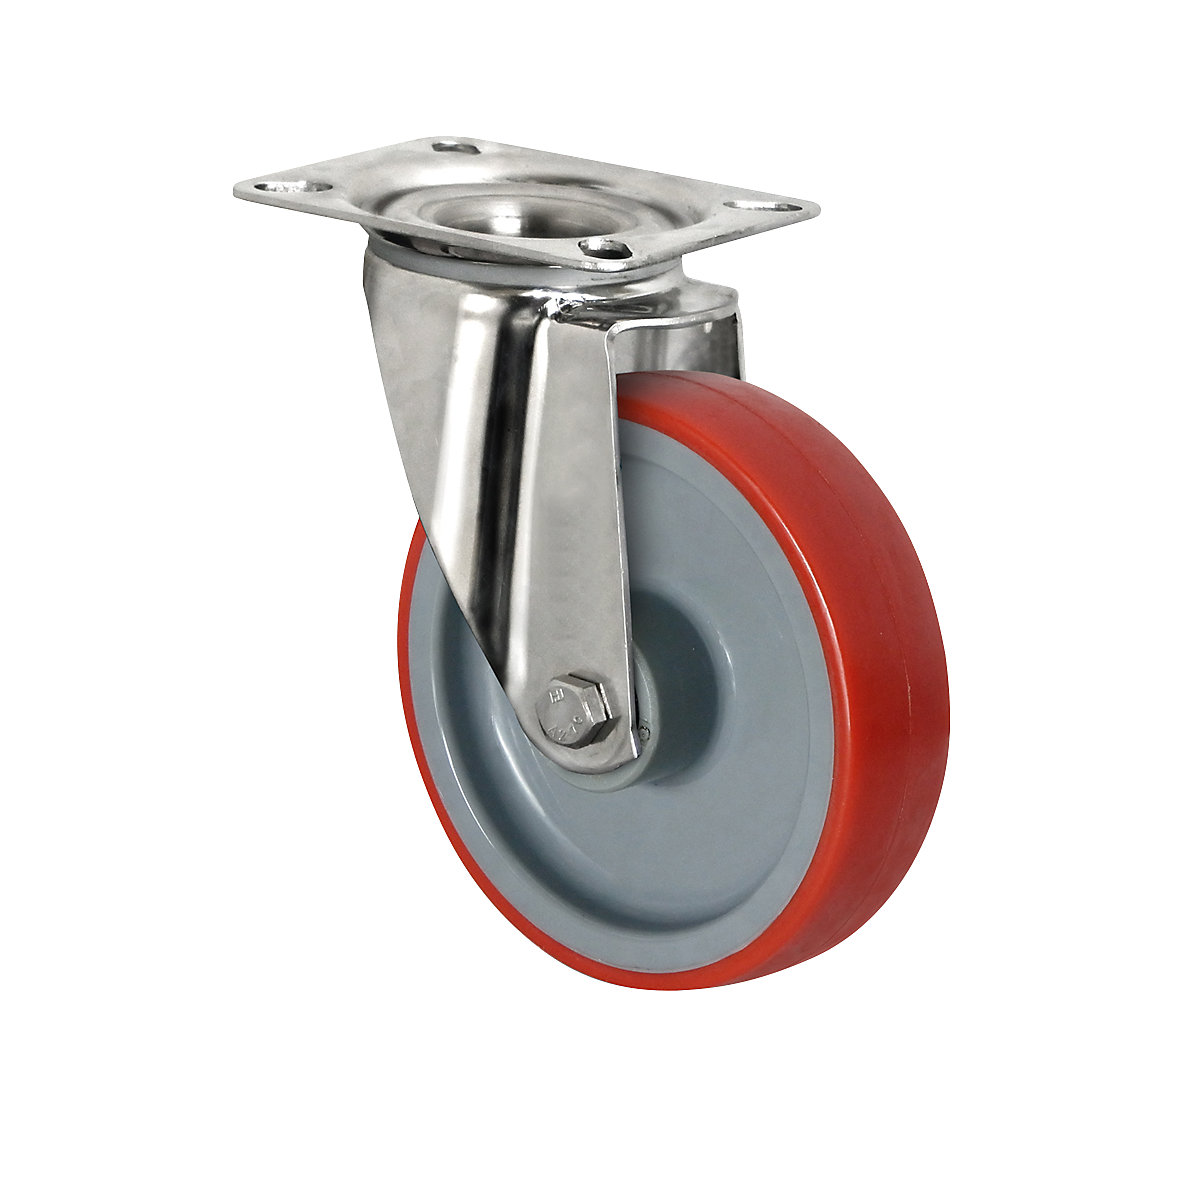 Roulette polyuréthane sur jante polyamide – eurokraft basic, Ø x largeur roue 200 x 50 mm, à partir de 2 pièces, roulette pivotante